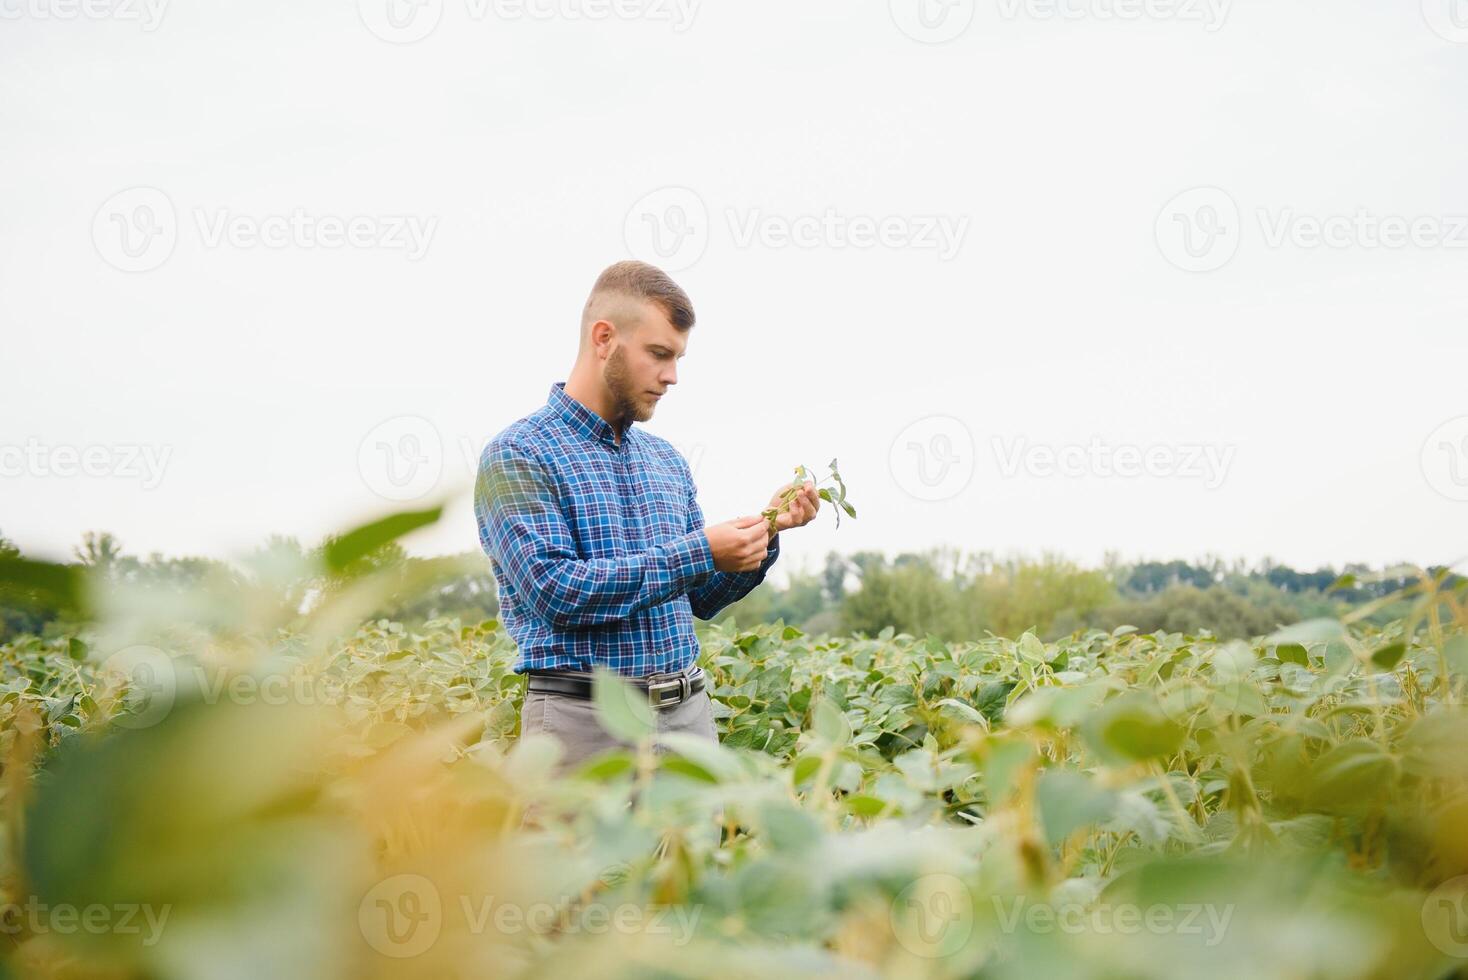 jordbrukare eller agronom granskning grön sojaböna växt i fält foto